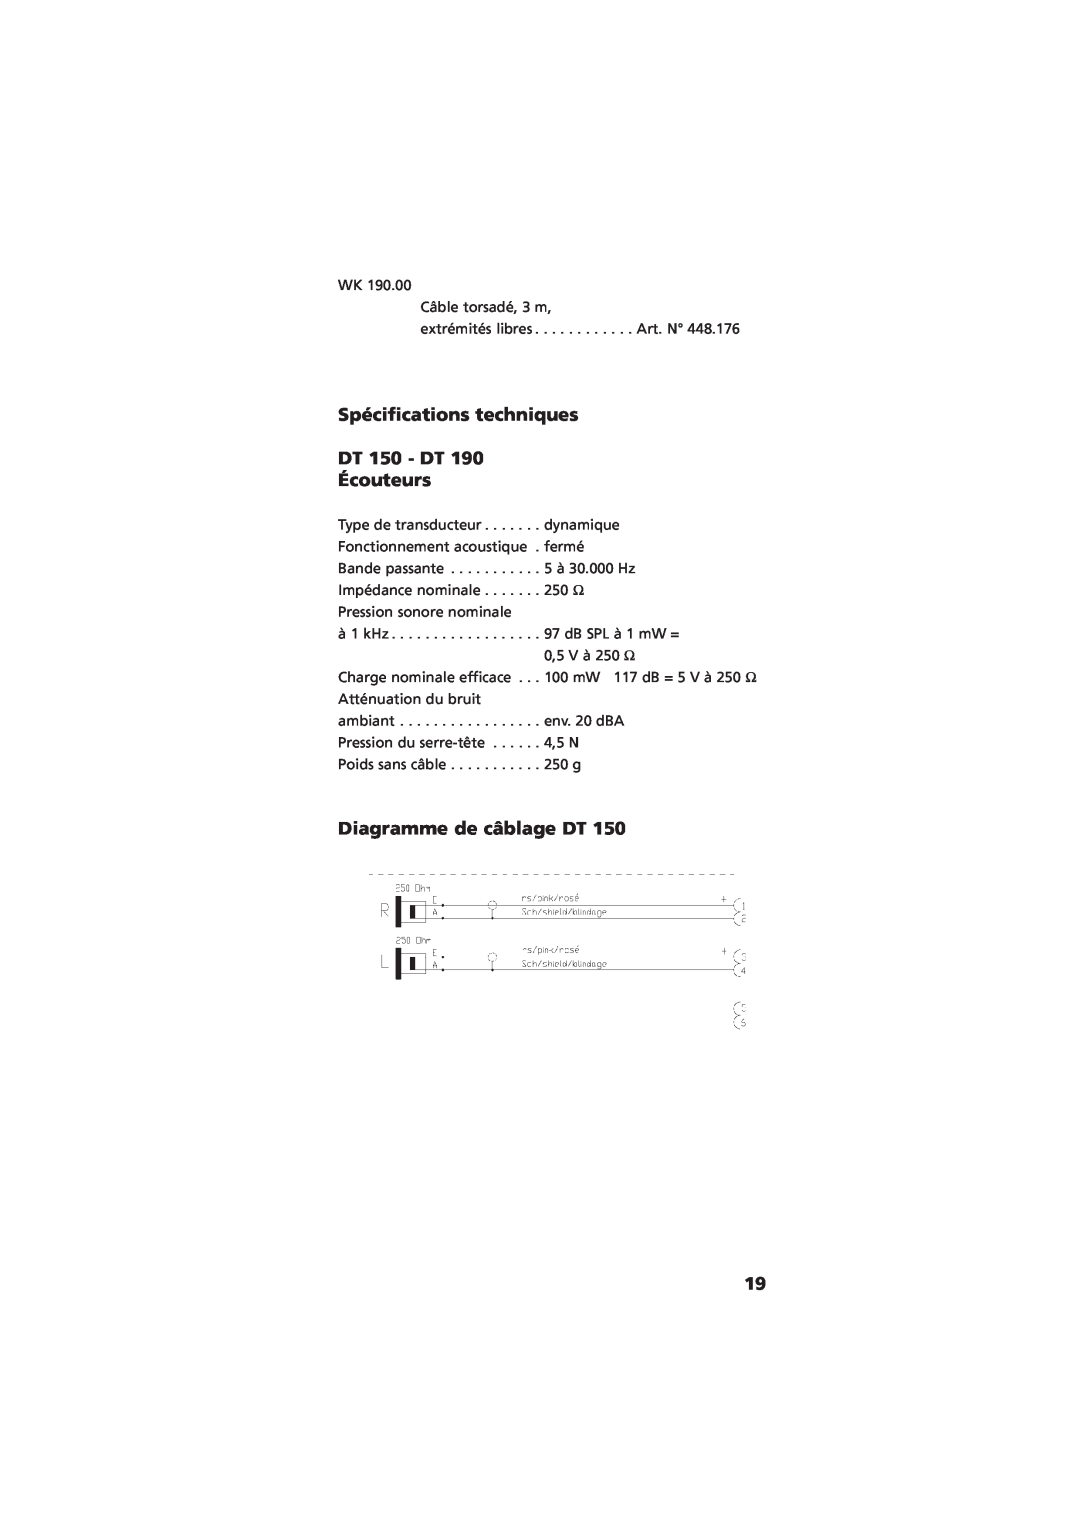 NEC manual Spécifications techniques, DT 150 - DT 190 Écouteurs, Diagramme de câblage DT 